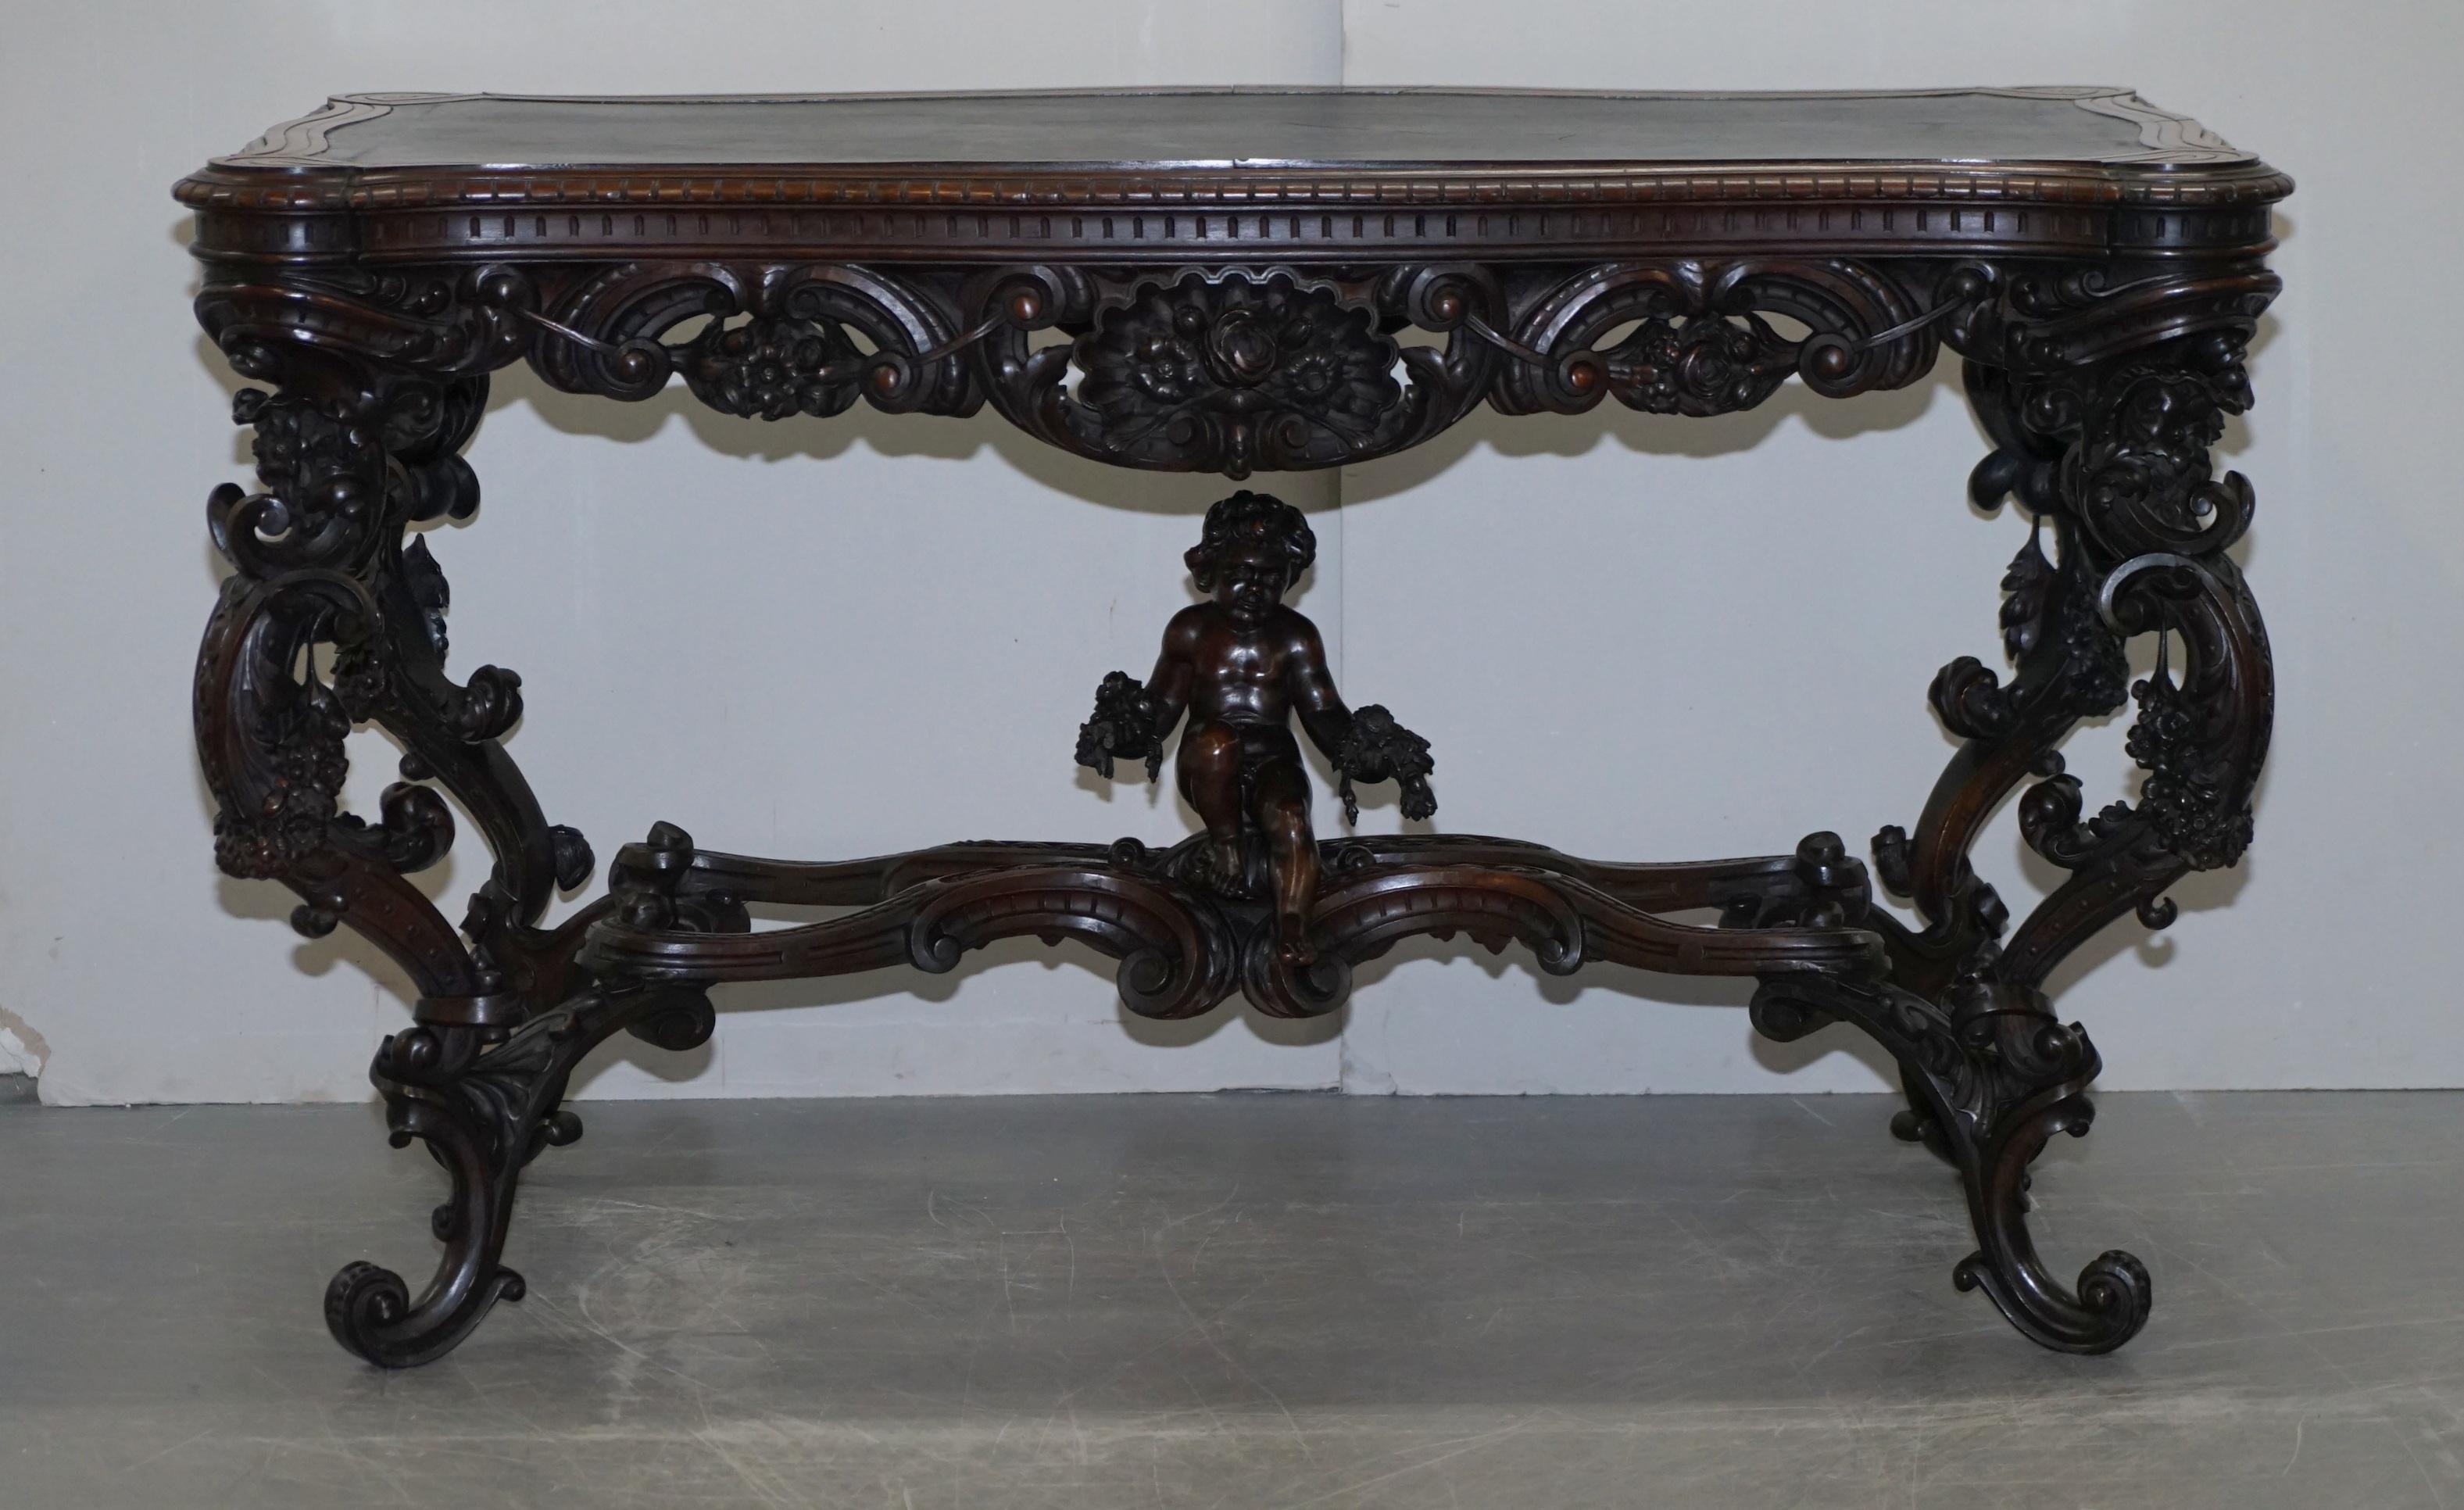 High Victorian Important Italian Angiolo Barbetti Firenze Antique Cherub Desk Library Table For Sale